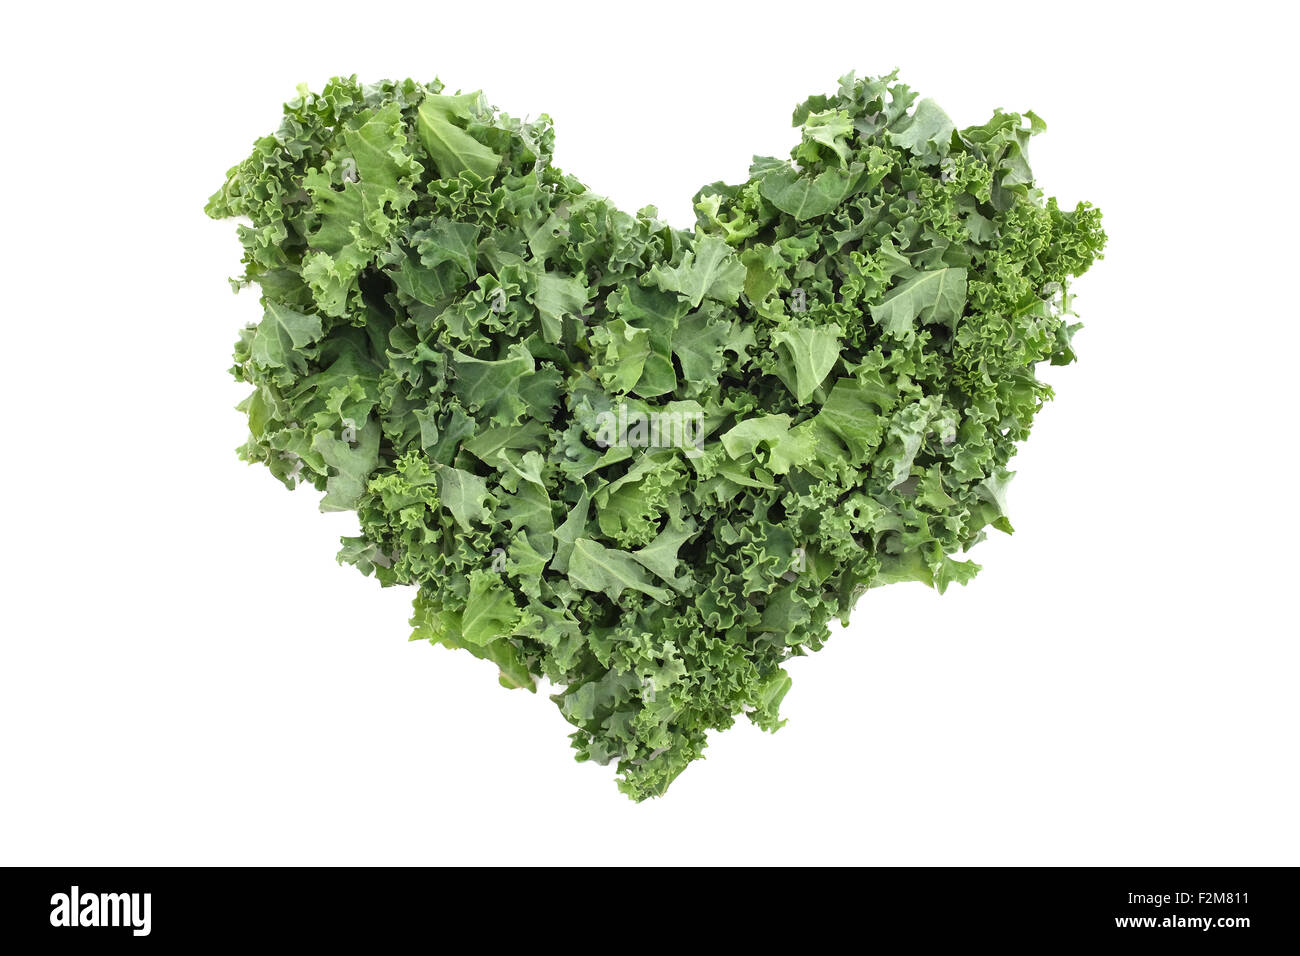 Gehackter Grünkohl in Form eines Herzens, isoliert auf weißem Hintergrund Stockfoto